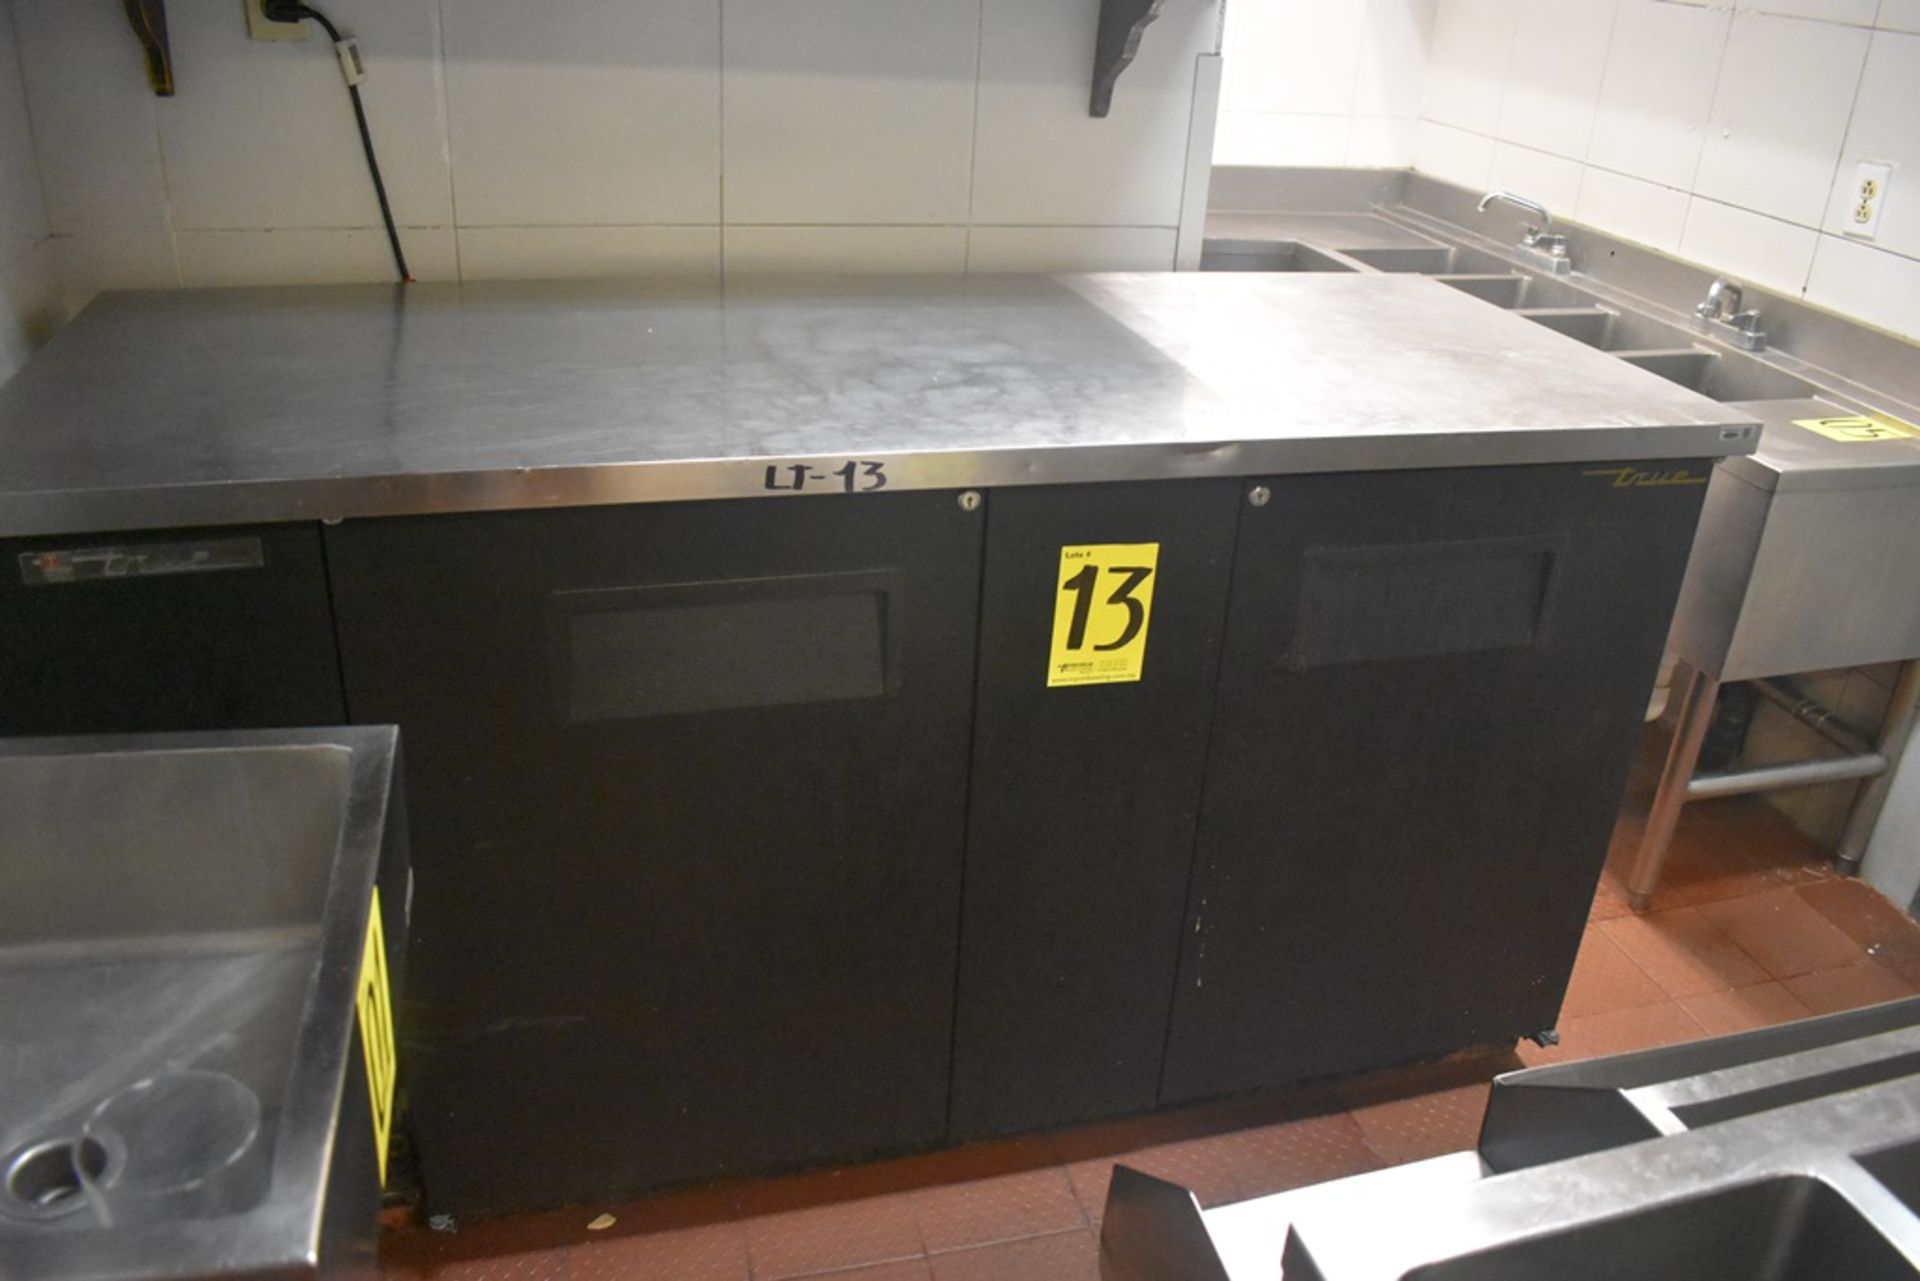 Mesa de trabajo refrigerada con cubierta en acero inoxidable marca True, modelo TBB-3, número de se - Image 9 of 20